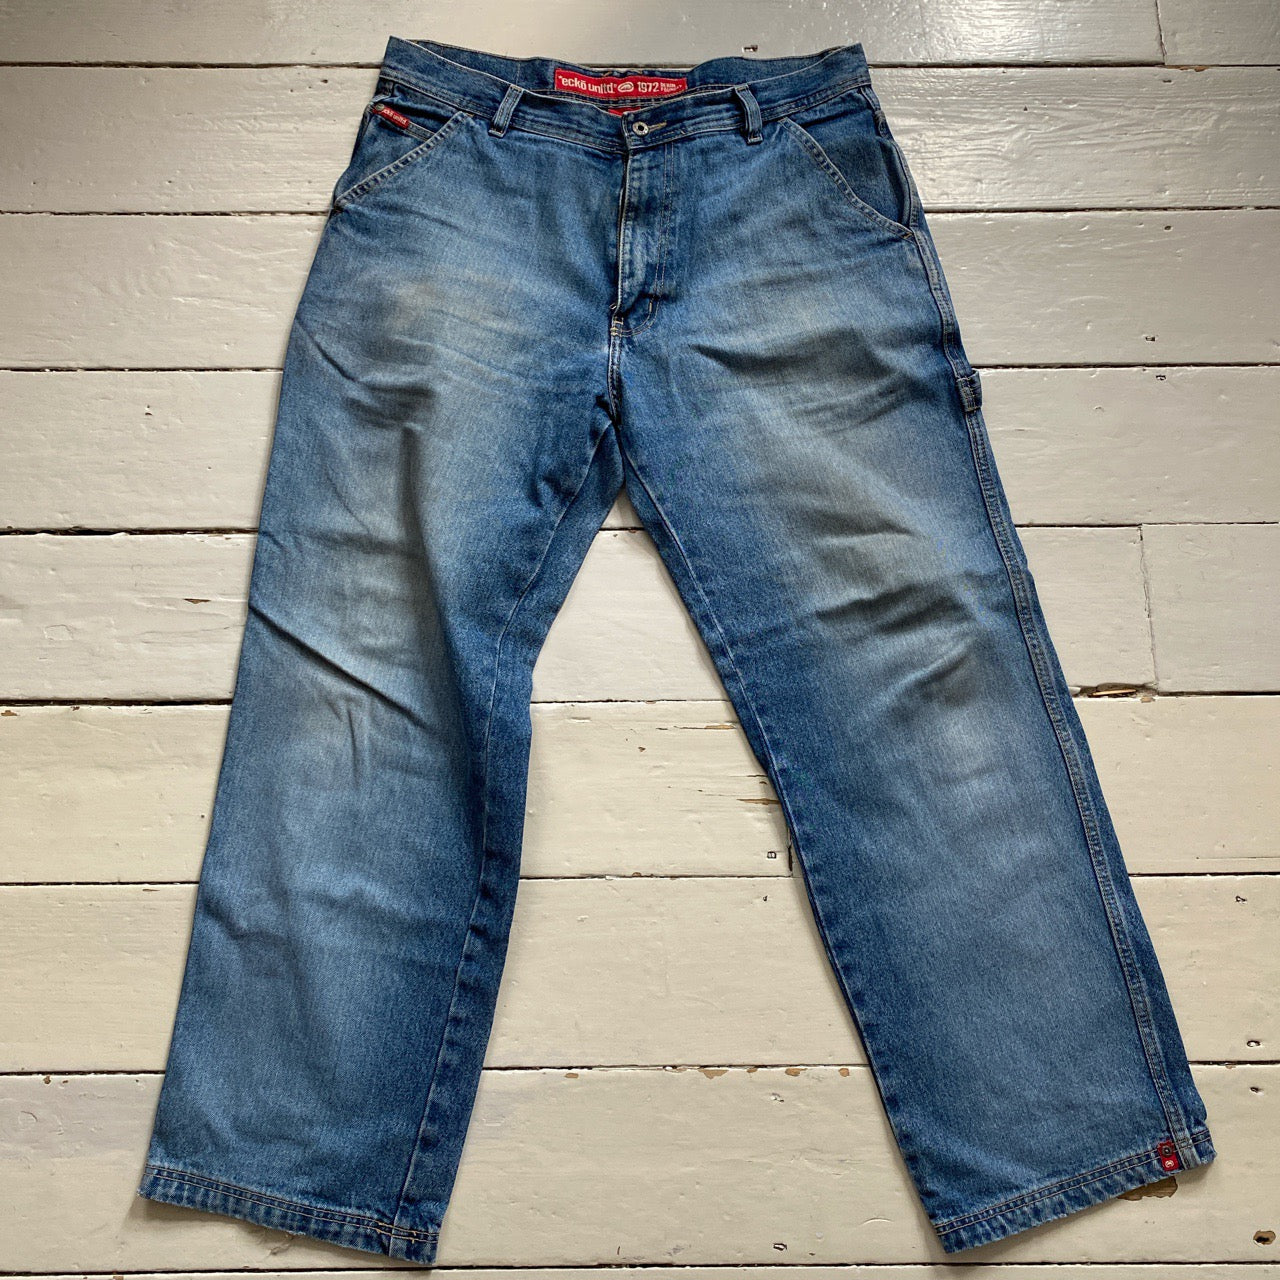 Ecko Unlimited UNLTD Cargo Jeans (36/30)